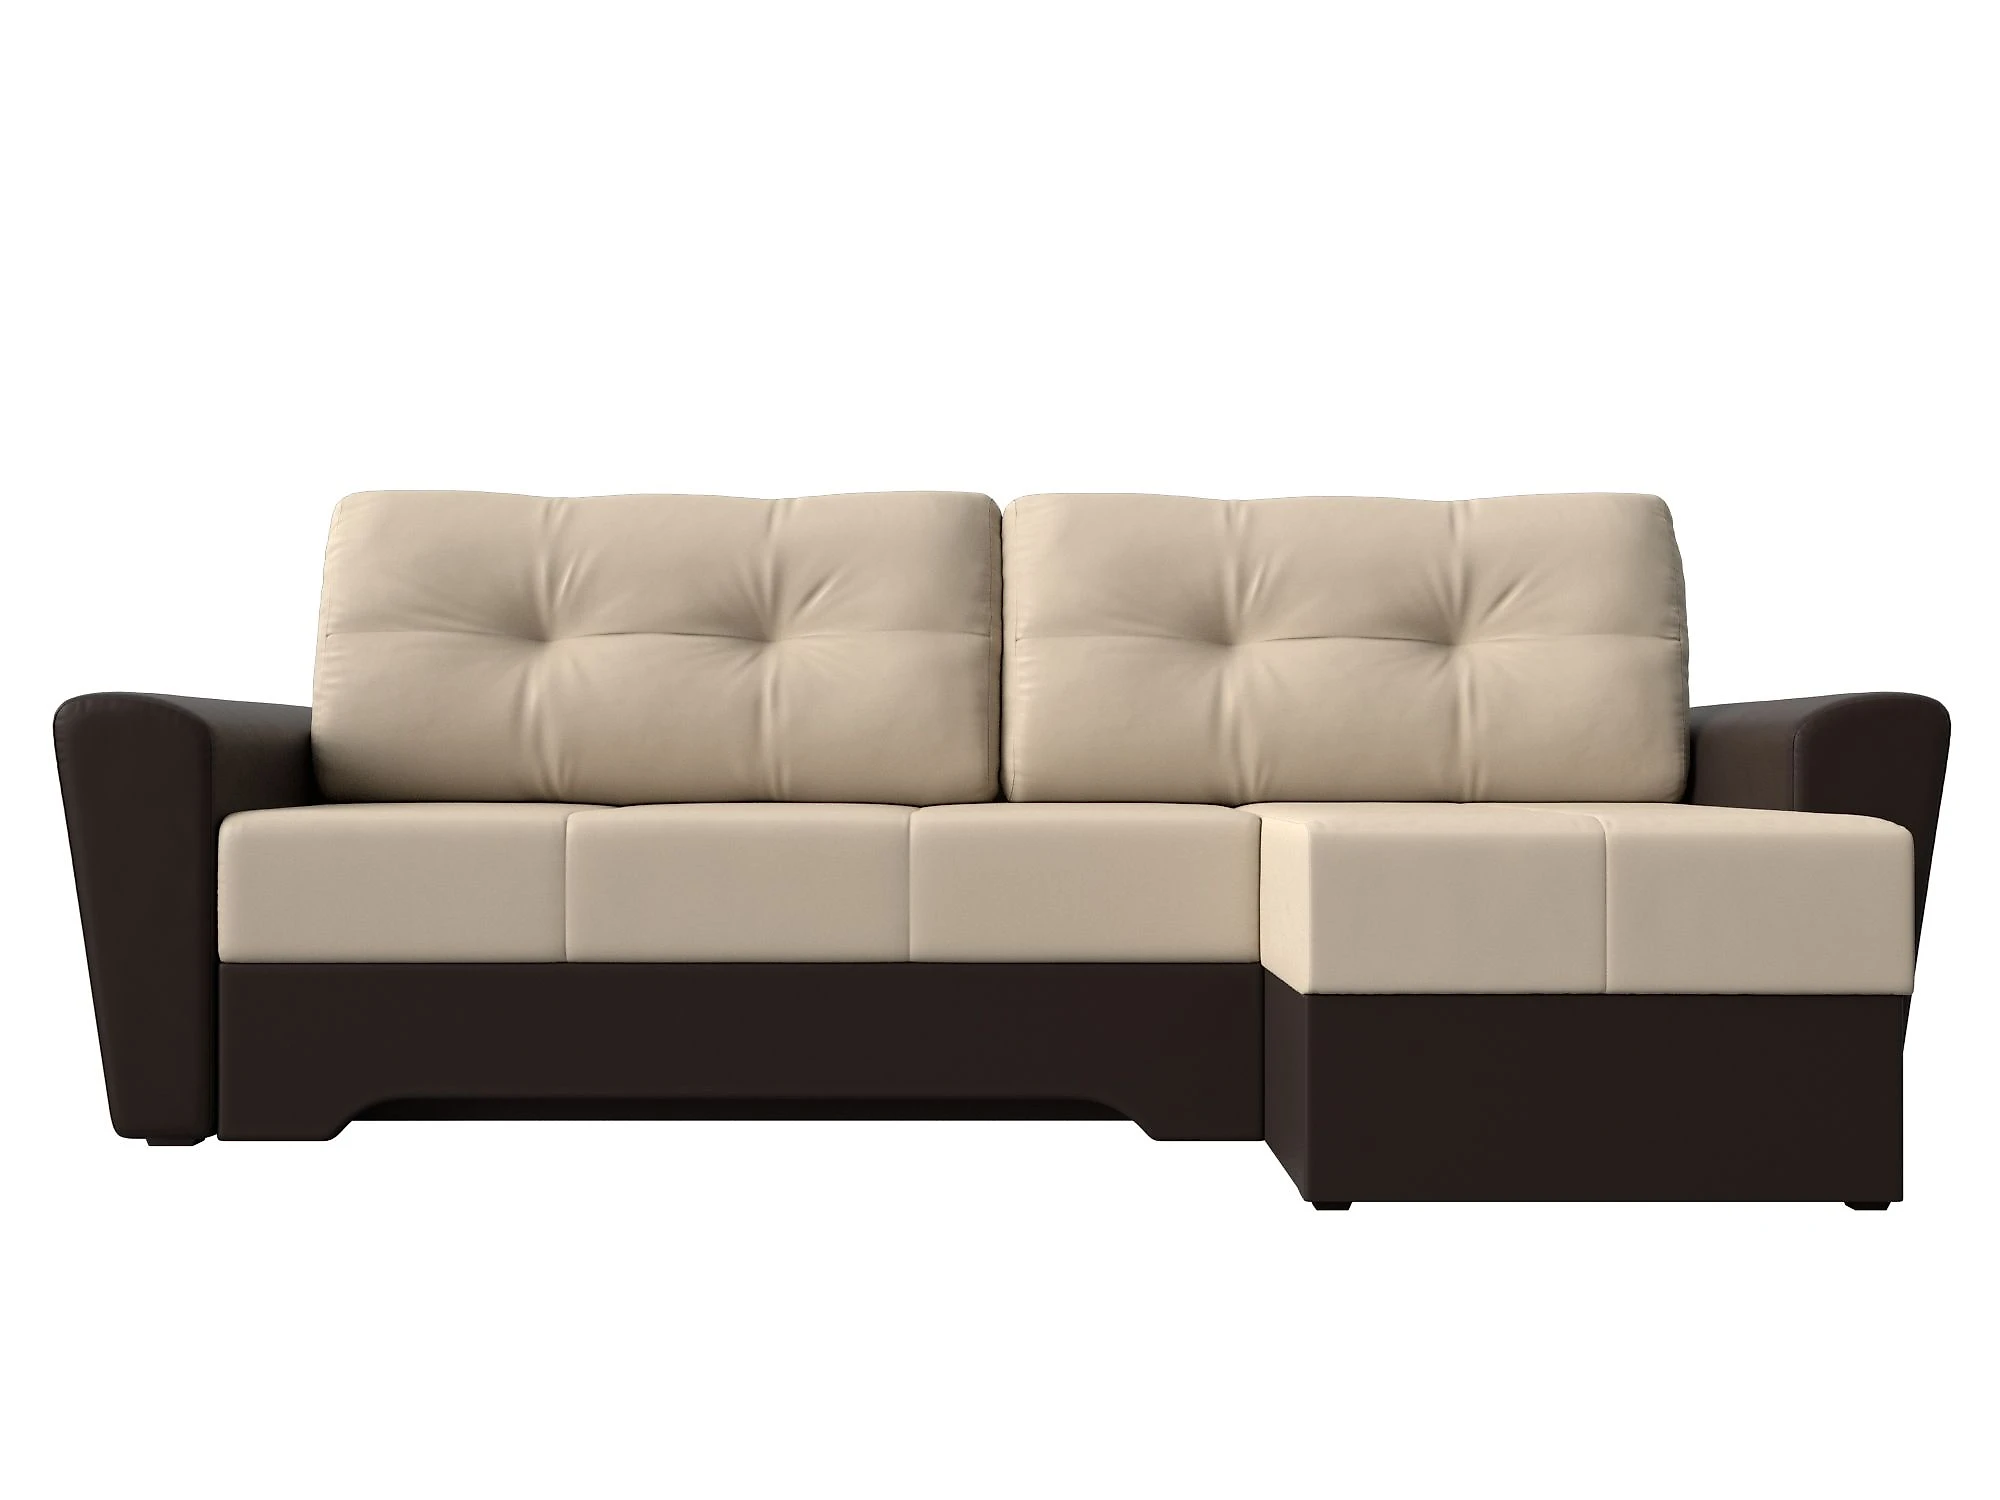  кожаный диван еврокнижка Амстердам Дизайн 45